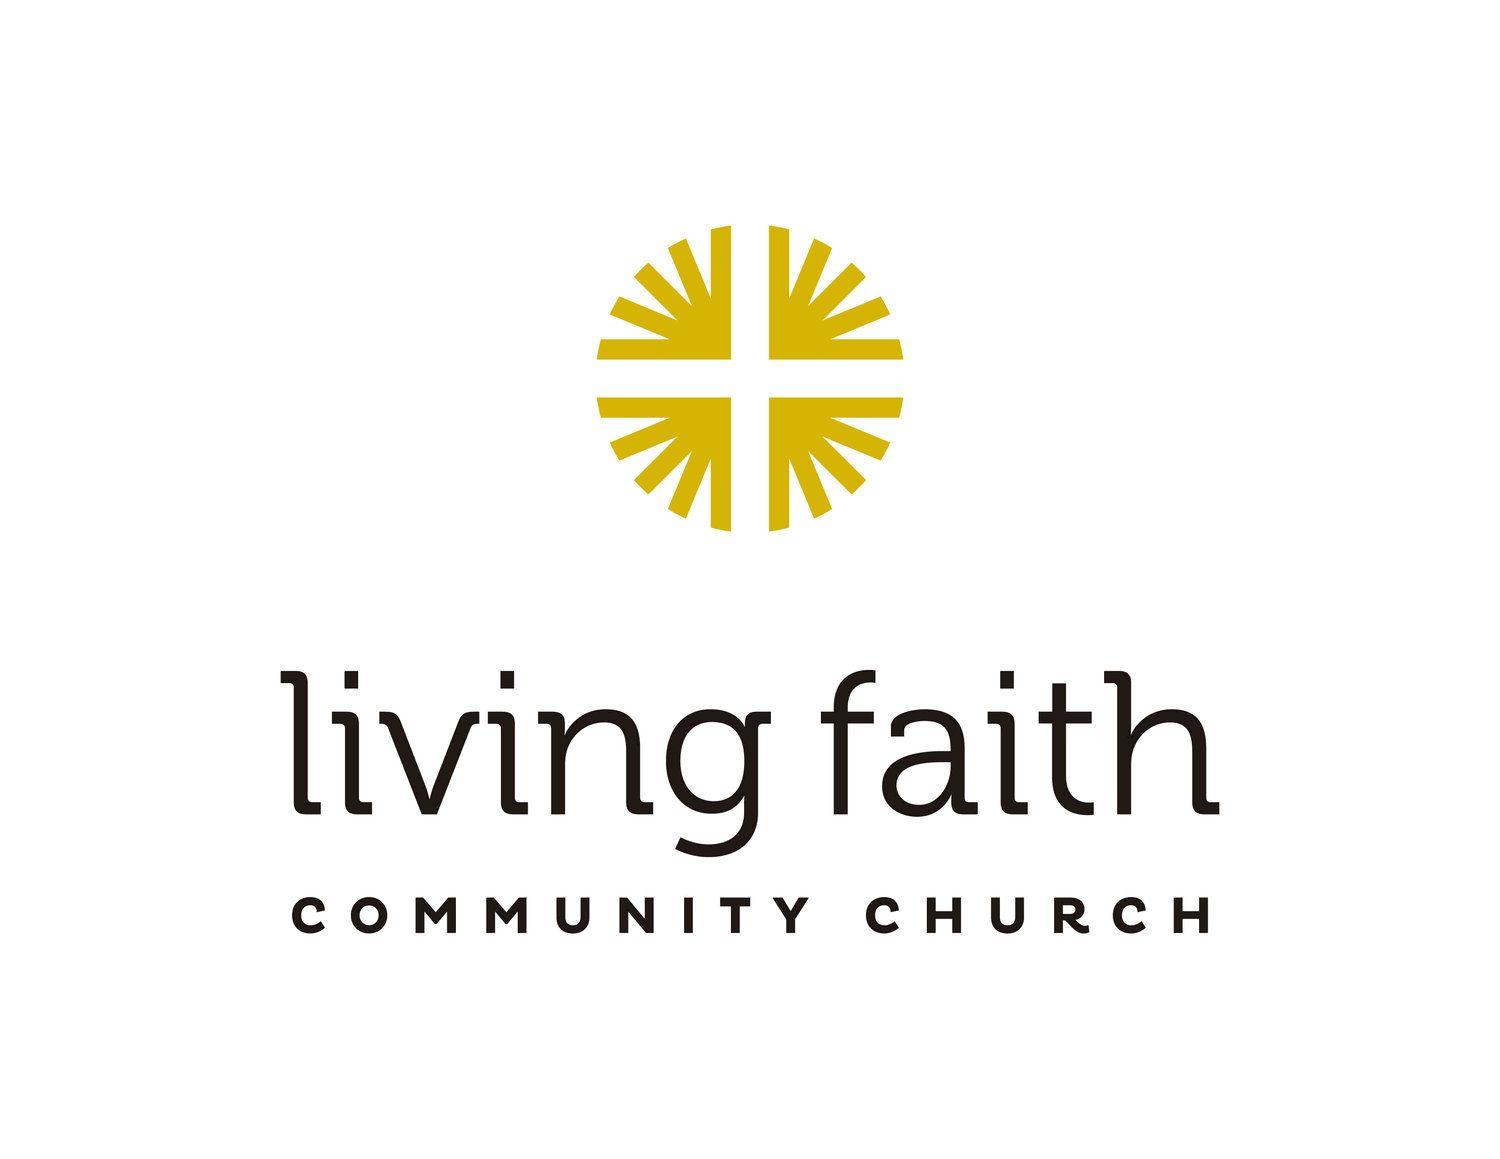 Faith Community Church Logo - Living Faith Community Church